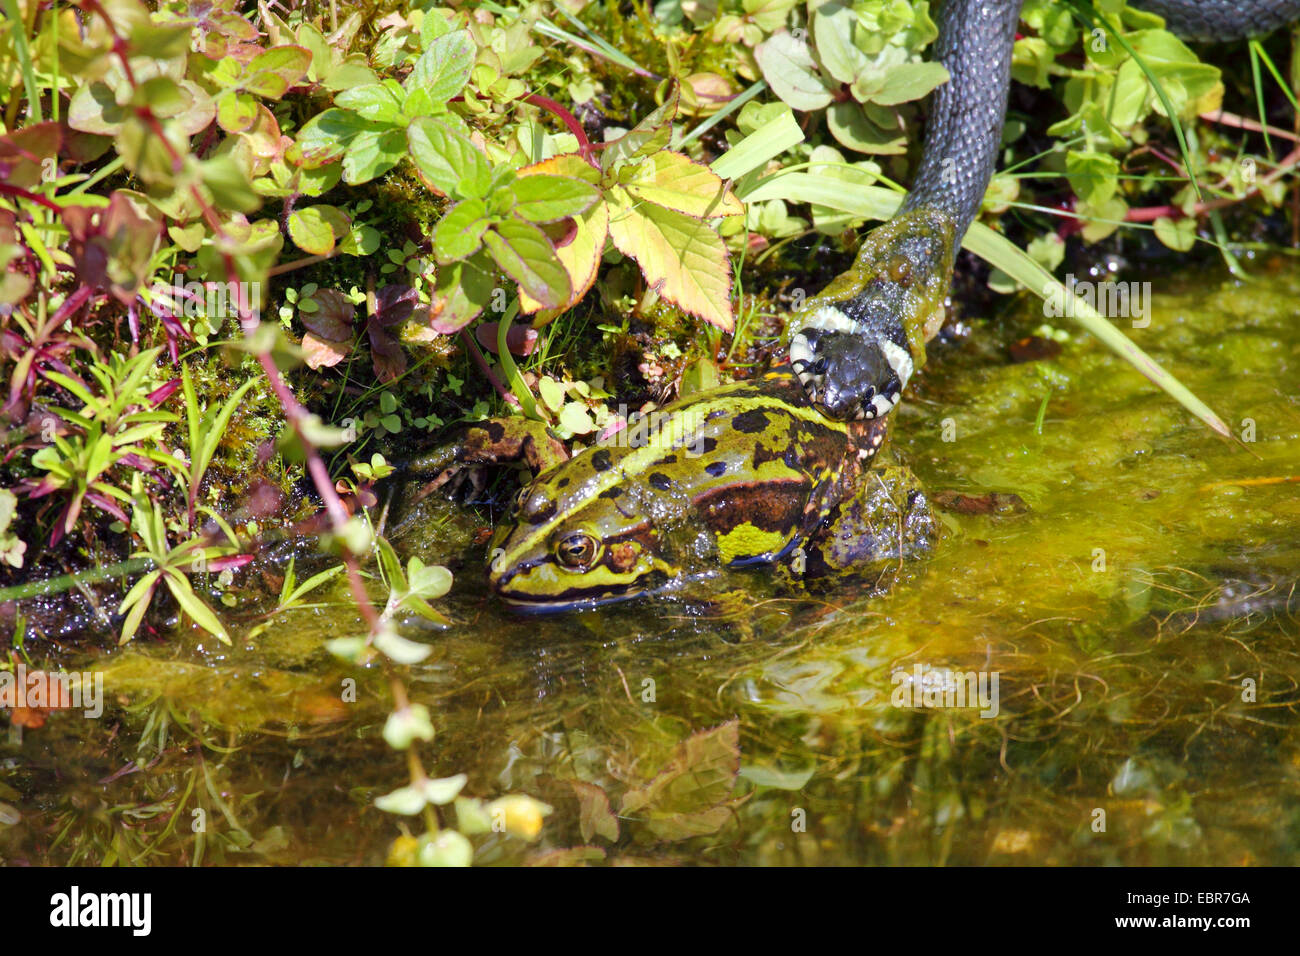 Biscia dal collare (Natrix natrix), ha catturato una rana Unione rana verde, comune rana verde, Germania, Meclemburgo-Pomerania Occidentale Foto Stock